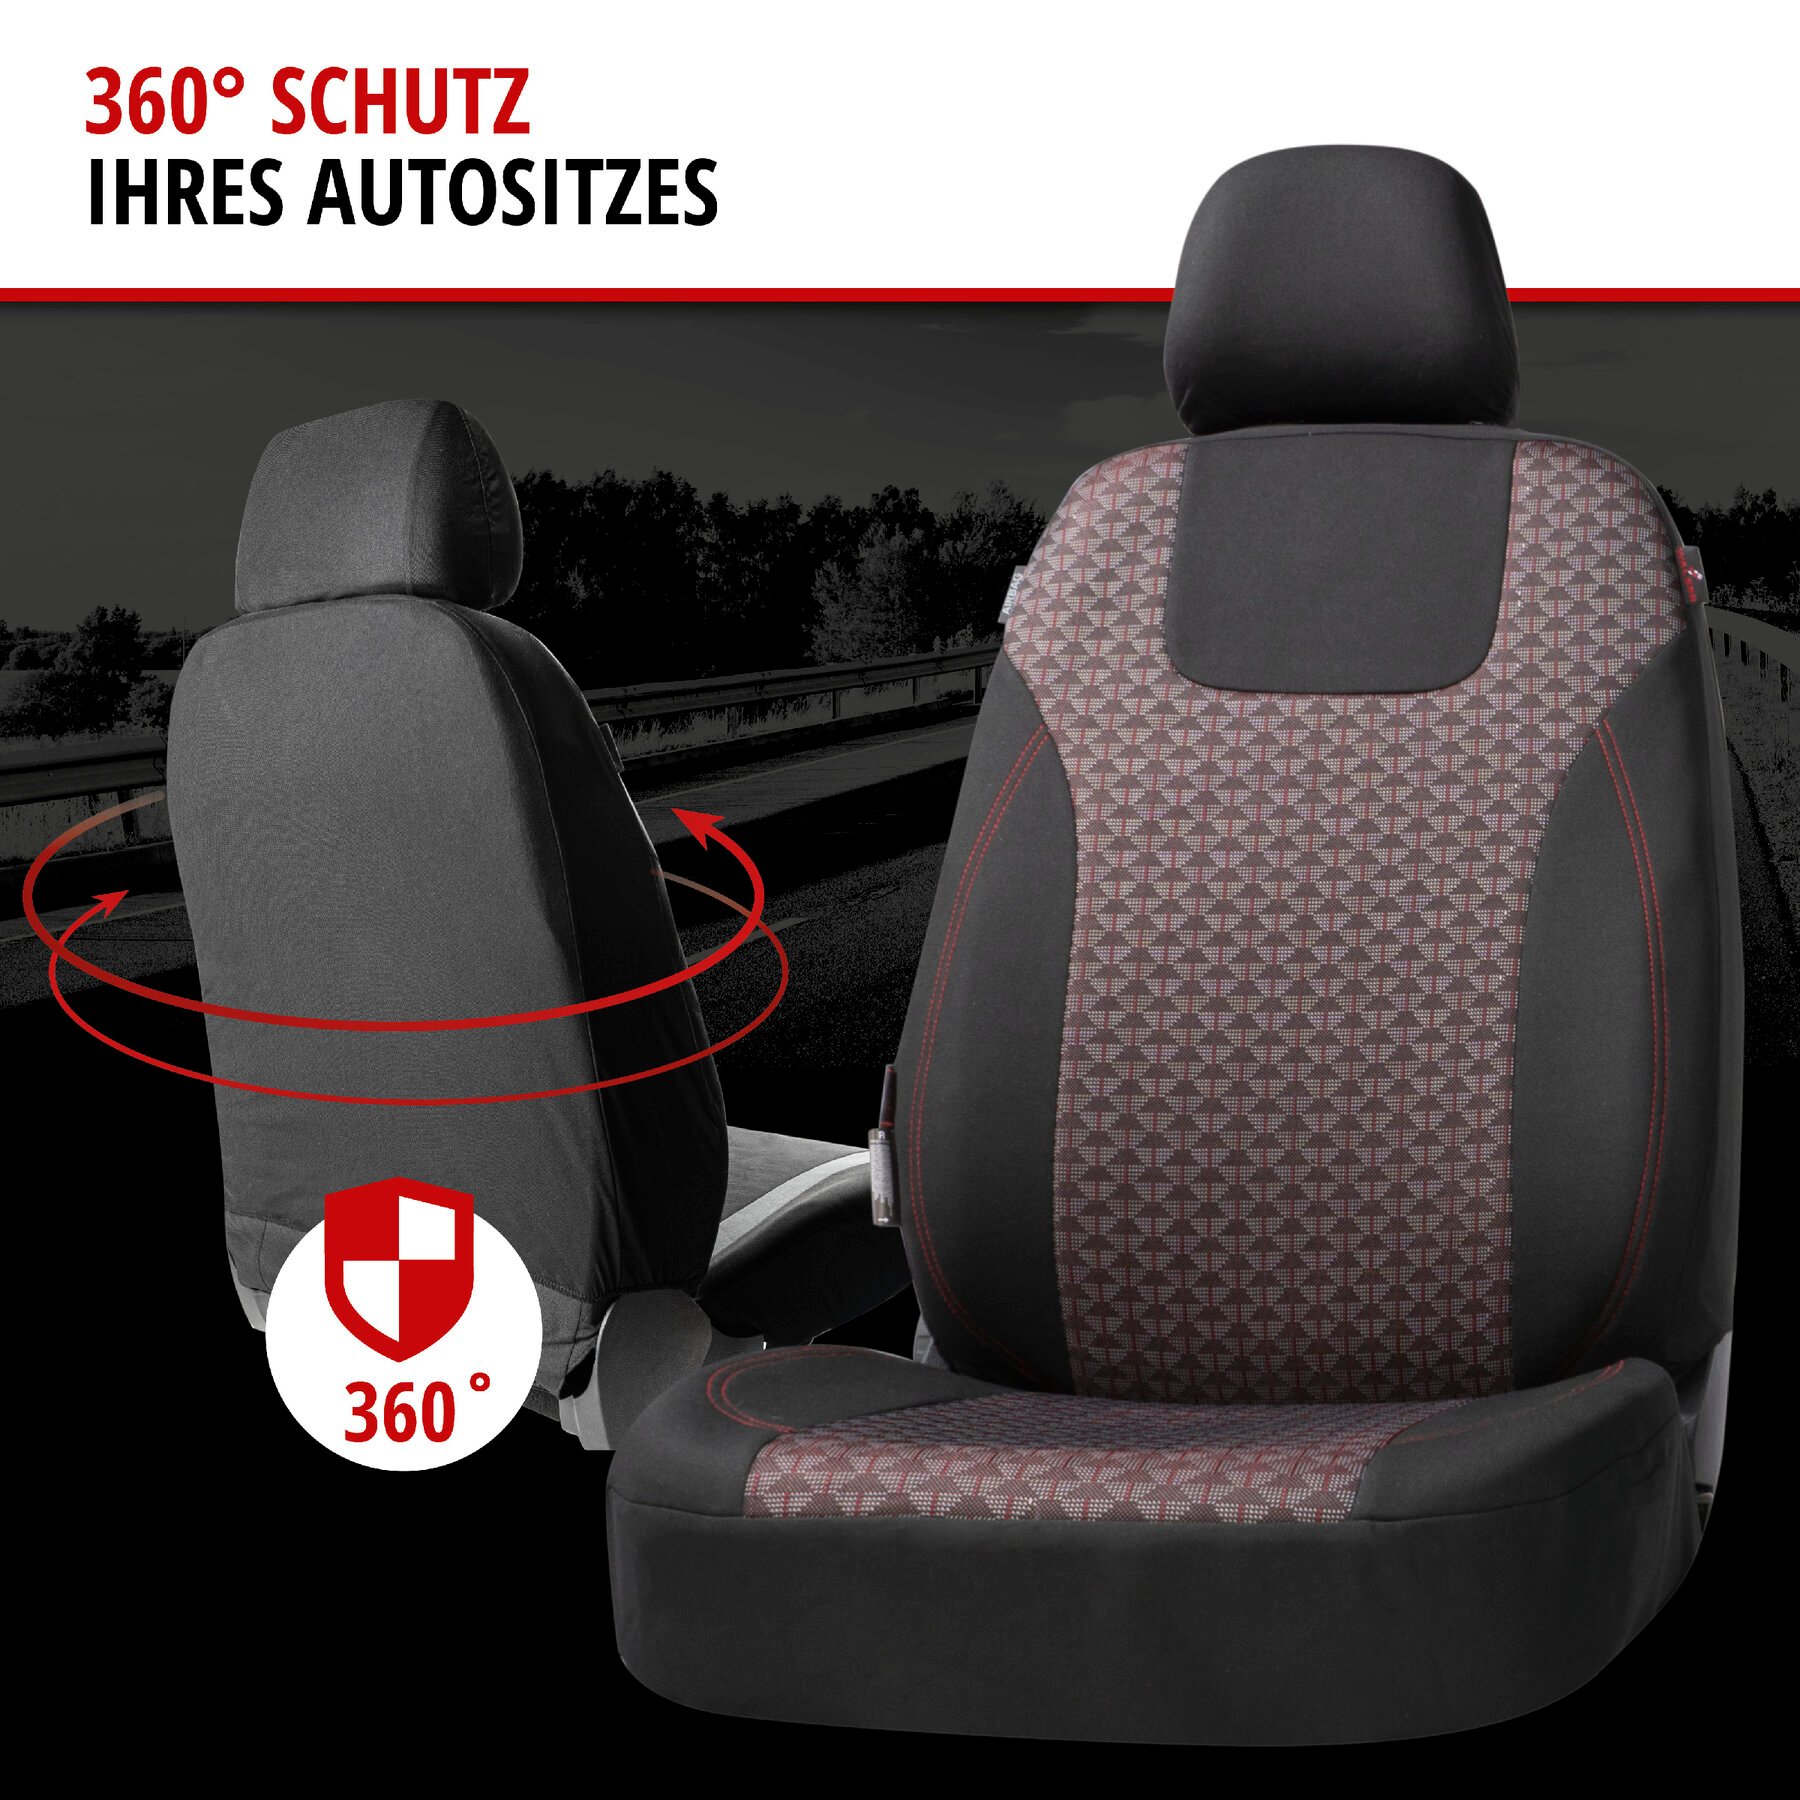 ZIPP IT Premium Autositzbezüge Redring für zwei Vordersitze mit Reißverschluss-System schwarz/rot